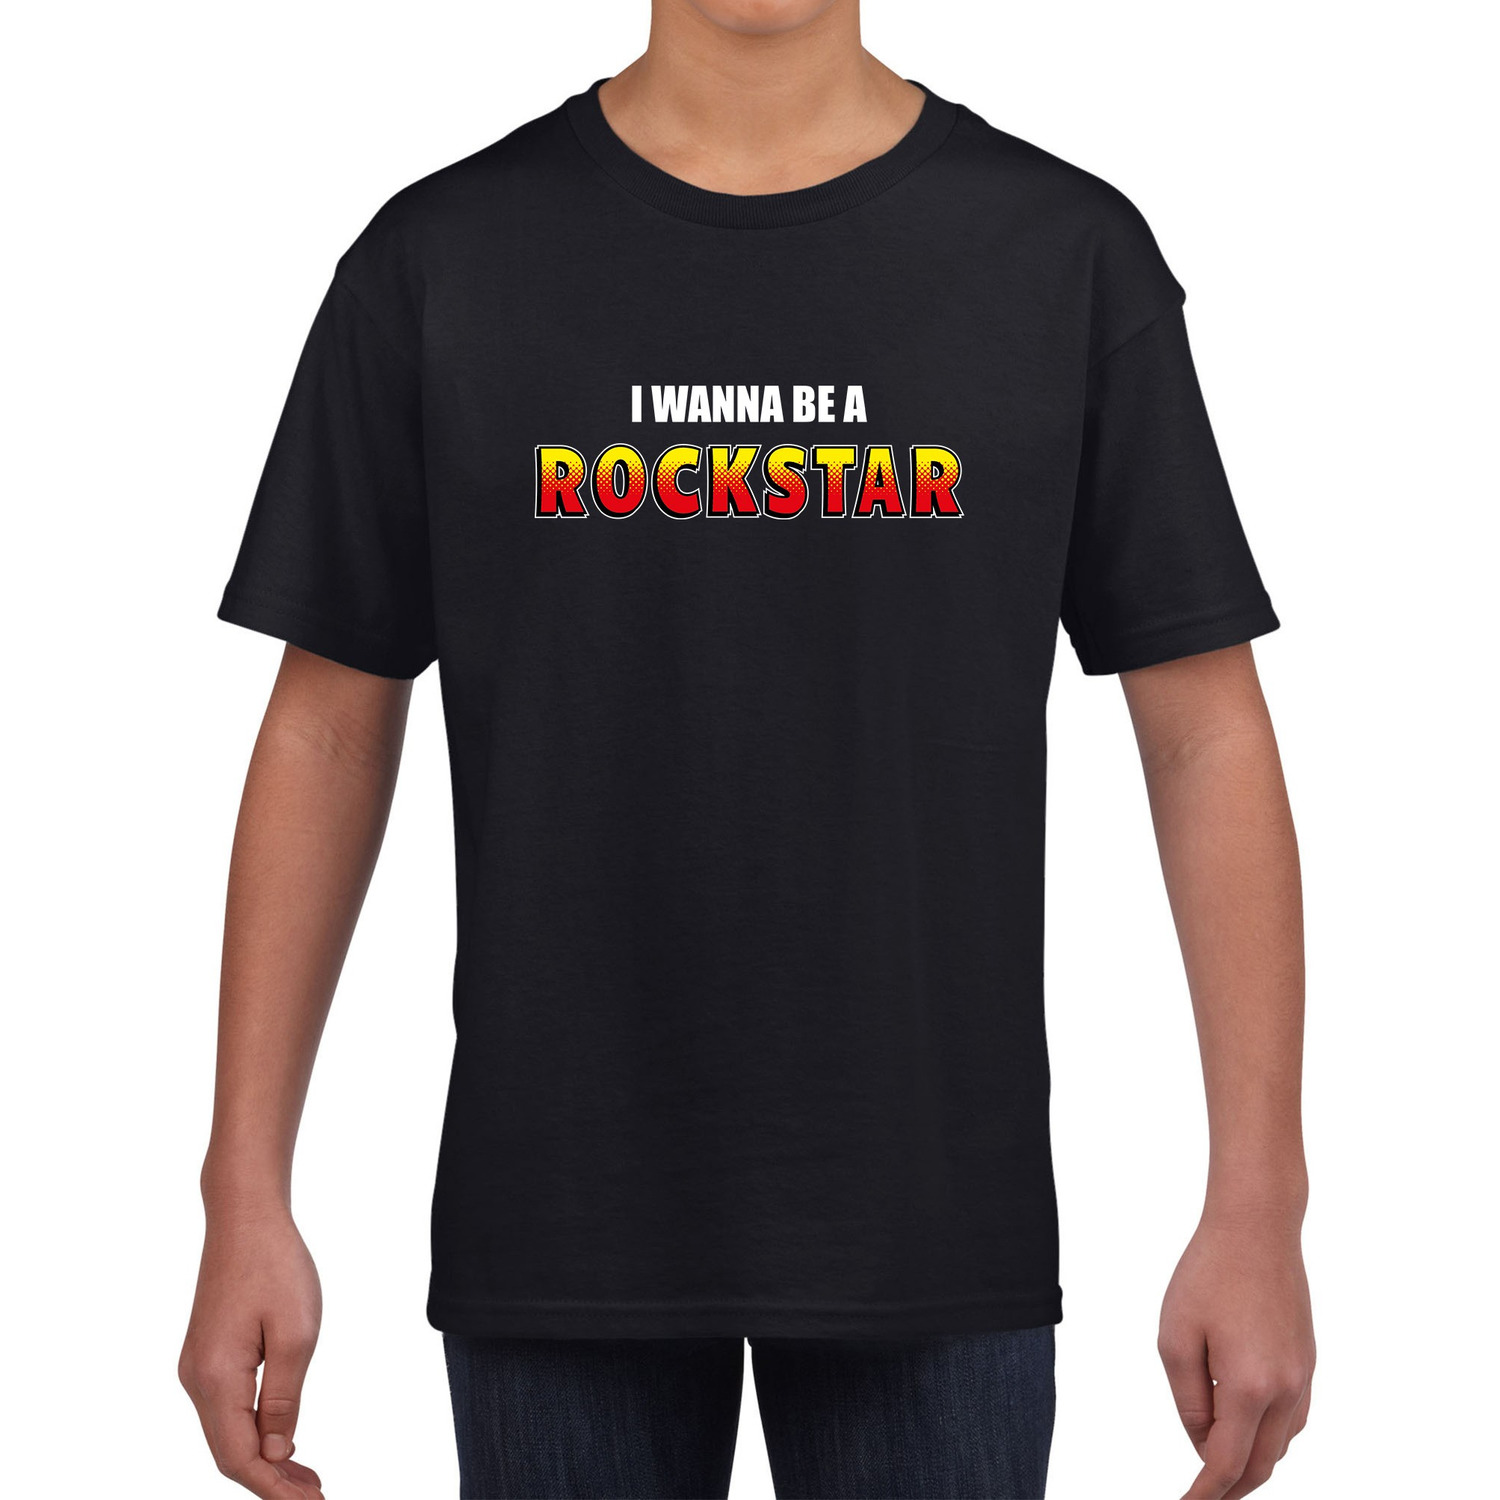 I wanna be a Rockstar fun tekst t-shirt zwart kids